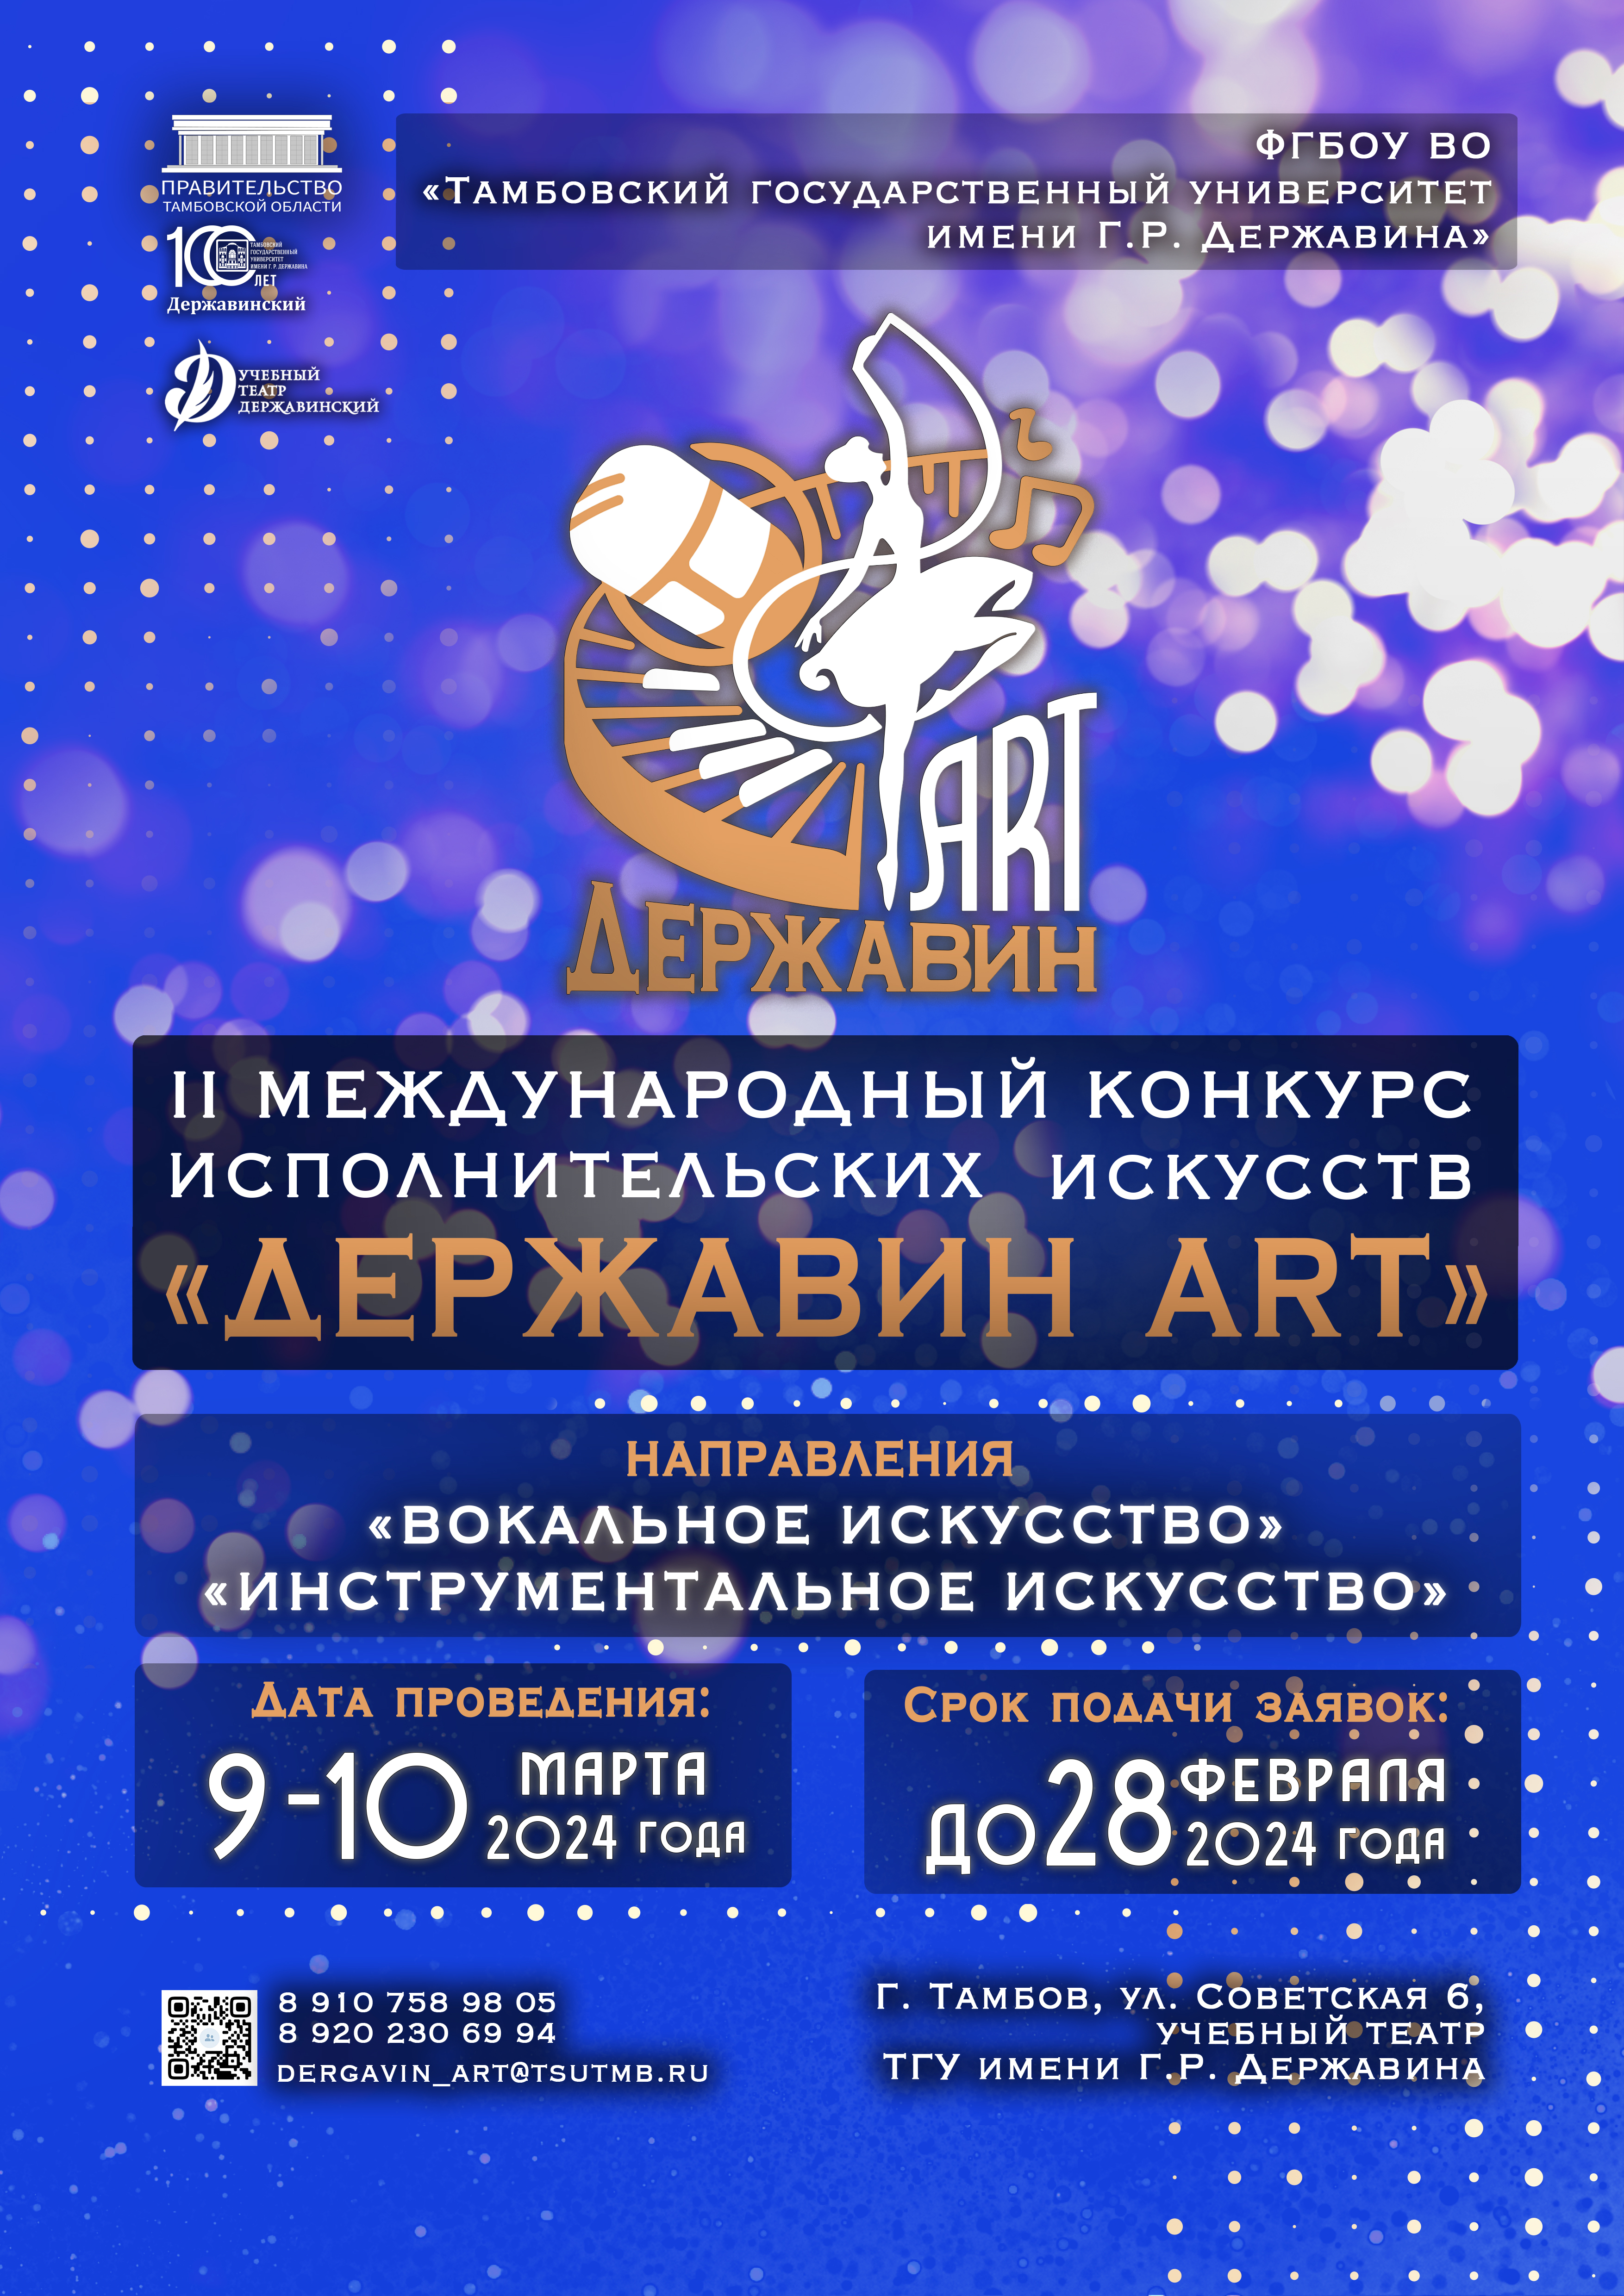 II Международный конкурс исполнительских искусств "Державин ART"